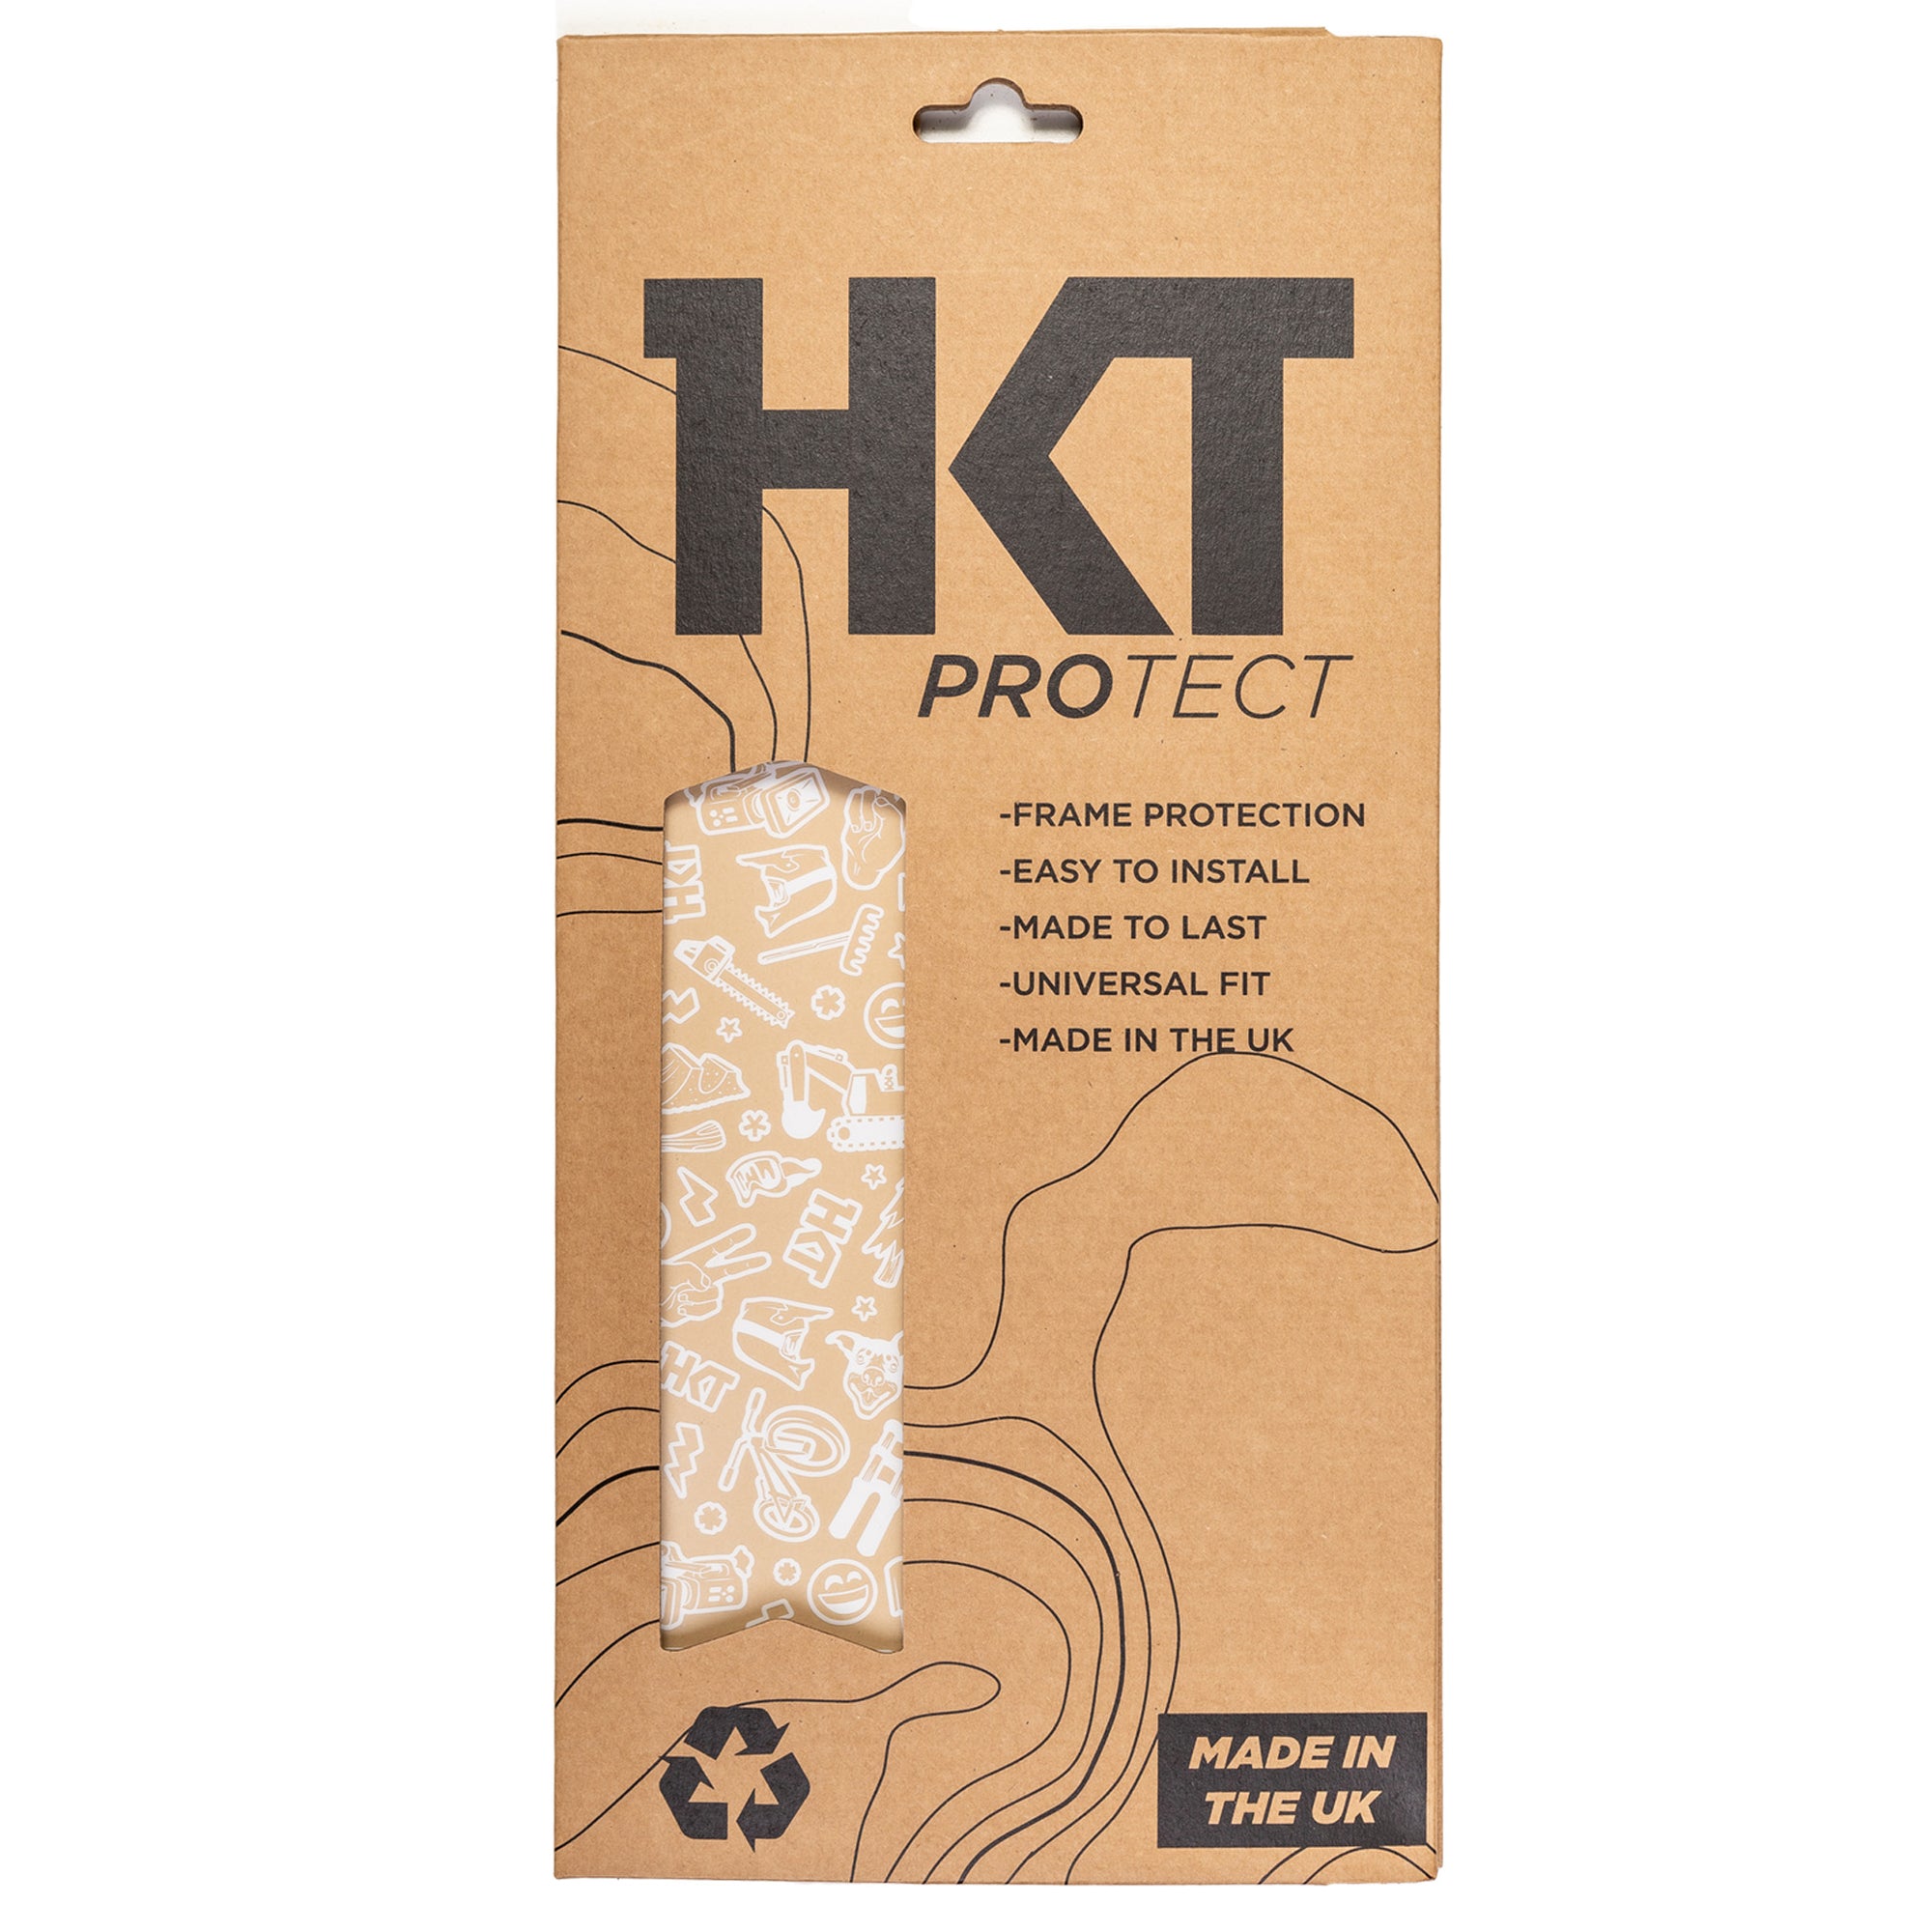 Vero Sandler Collab Bike Frame Protection Kit - HKT Products